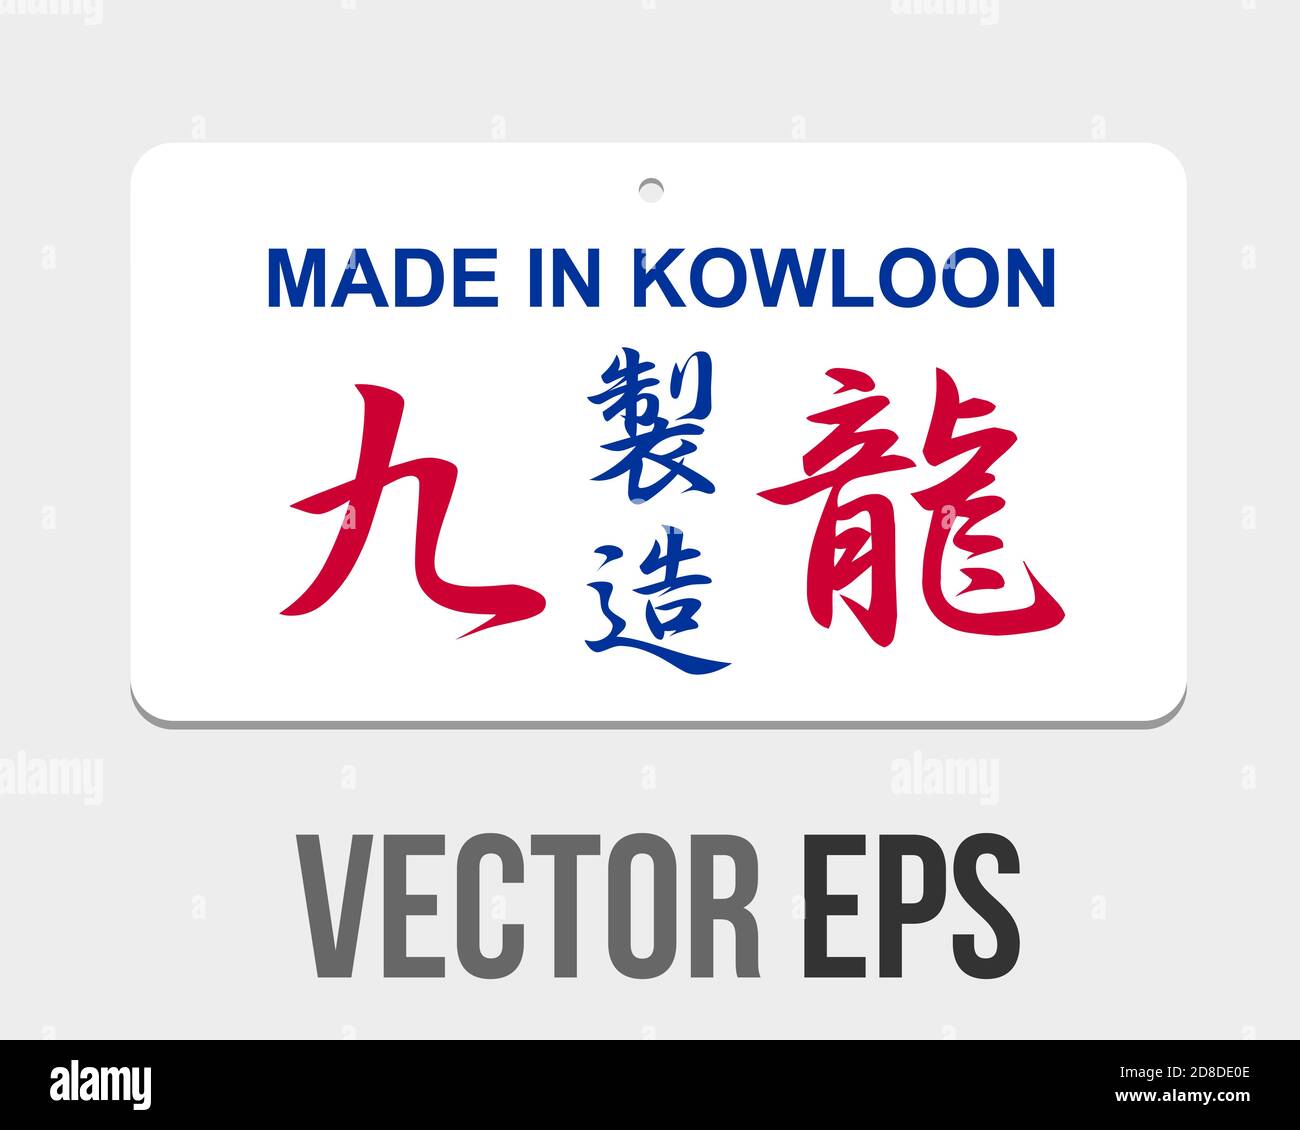 Der isolierte Vektor traditionellen Hong Kong Retro-Stil Logo-Design, zeigt in Kowloon auf Chinesisch hergestellt Stock Vektor